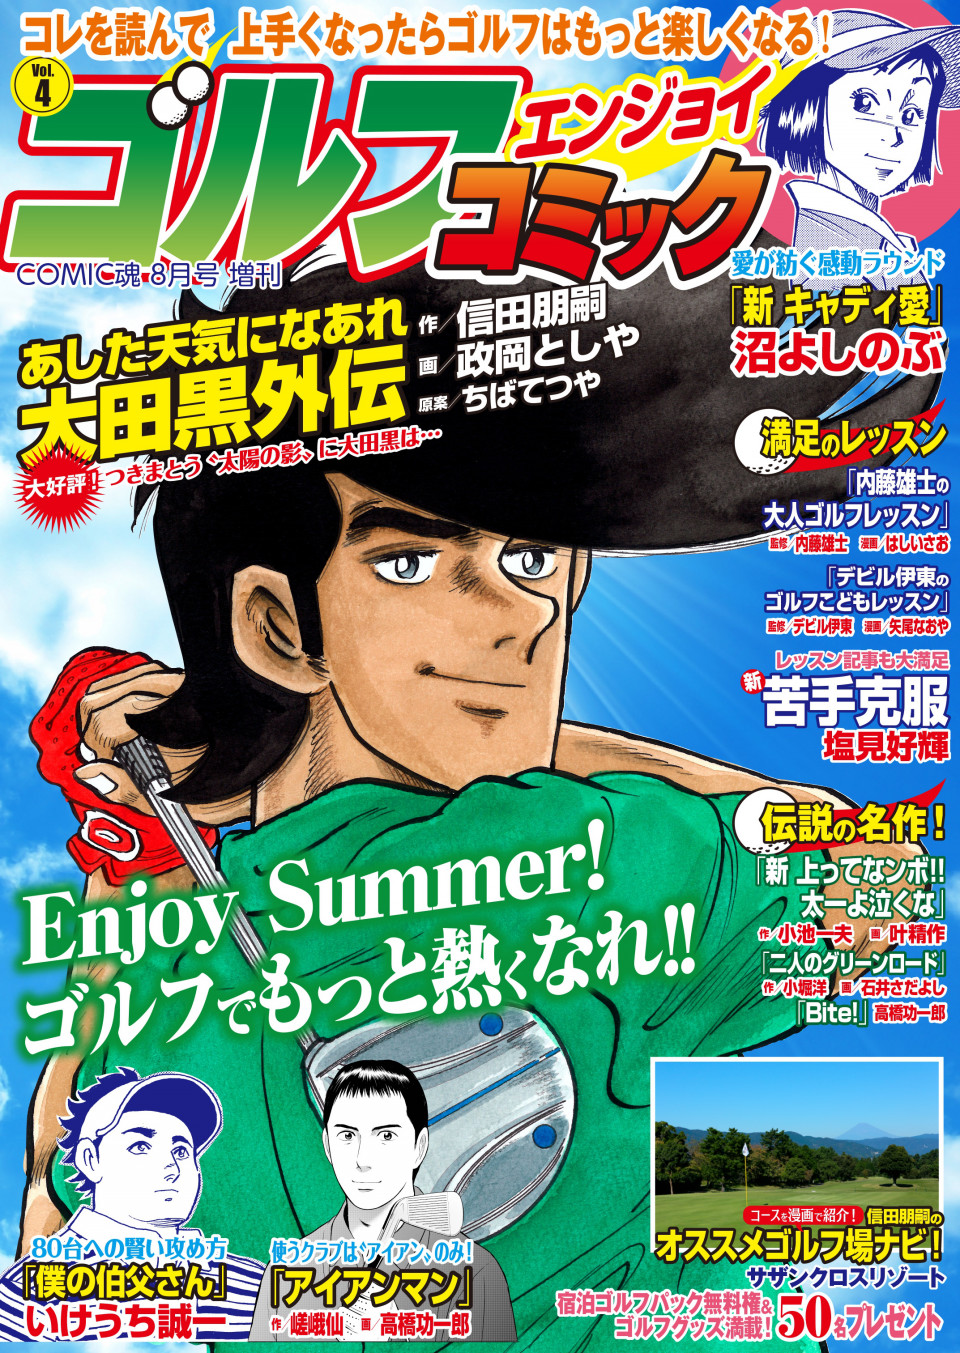 Comic魂８月号増刊 ゴルフエンジョイコミック Vol 4 19年6月25日発売 はちどり 本の企画 編集から Comic魂 女子ごはんなどの本の出版まで